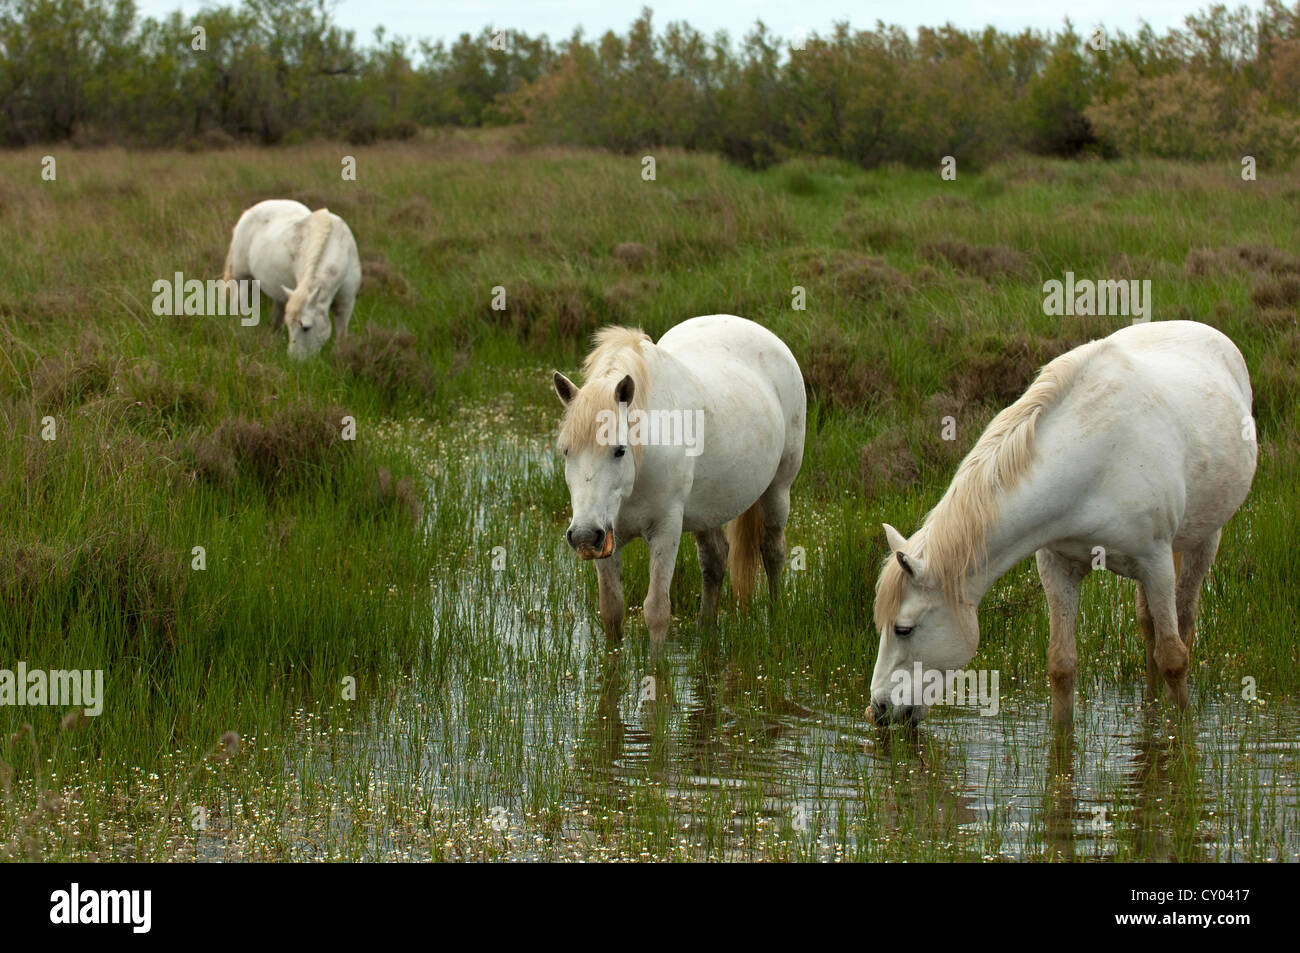 Un troupeau de chevaux semi-sauvages paissant dans un milieu humide, Camargue, France, Europe Banque D'Images